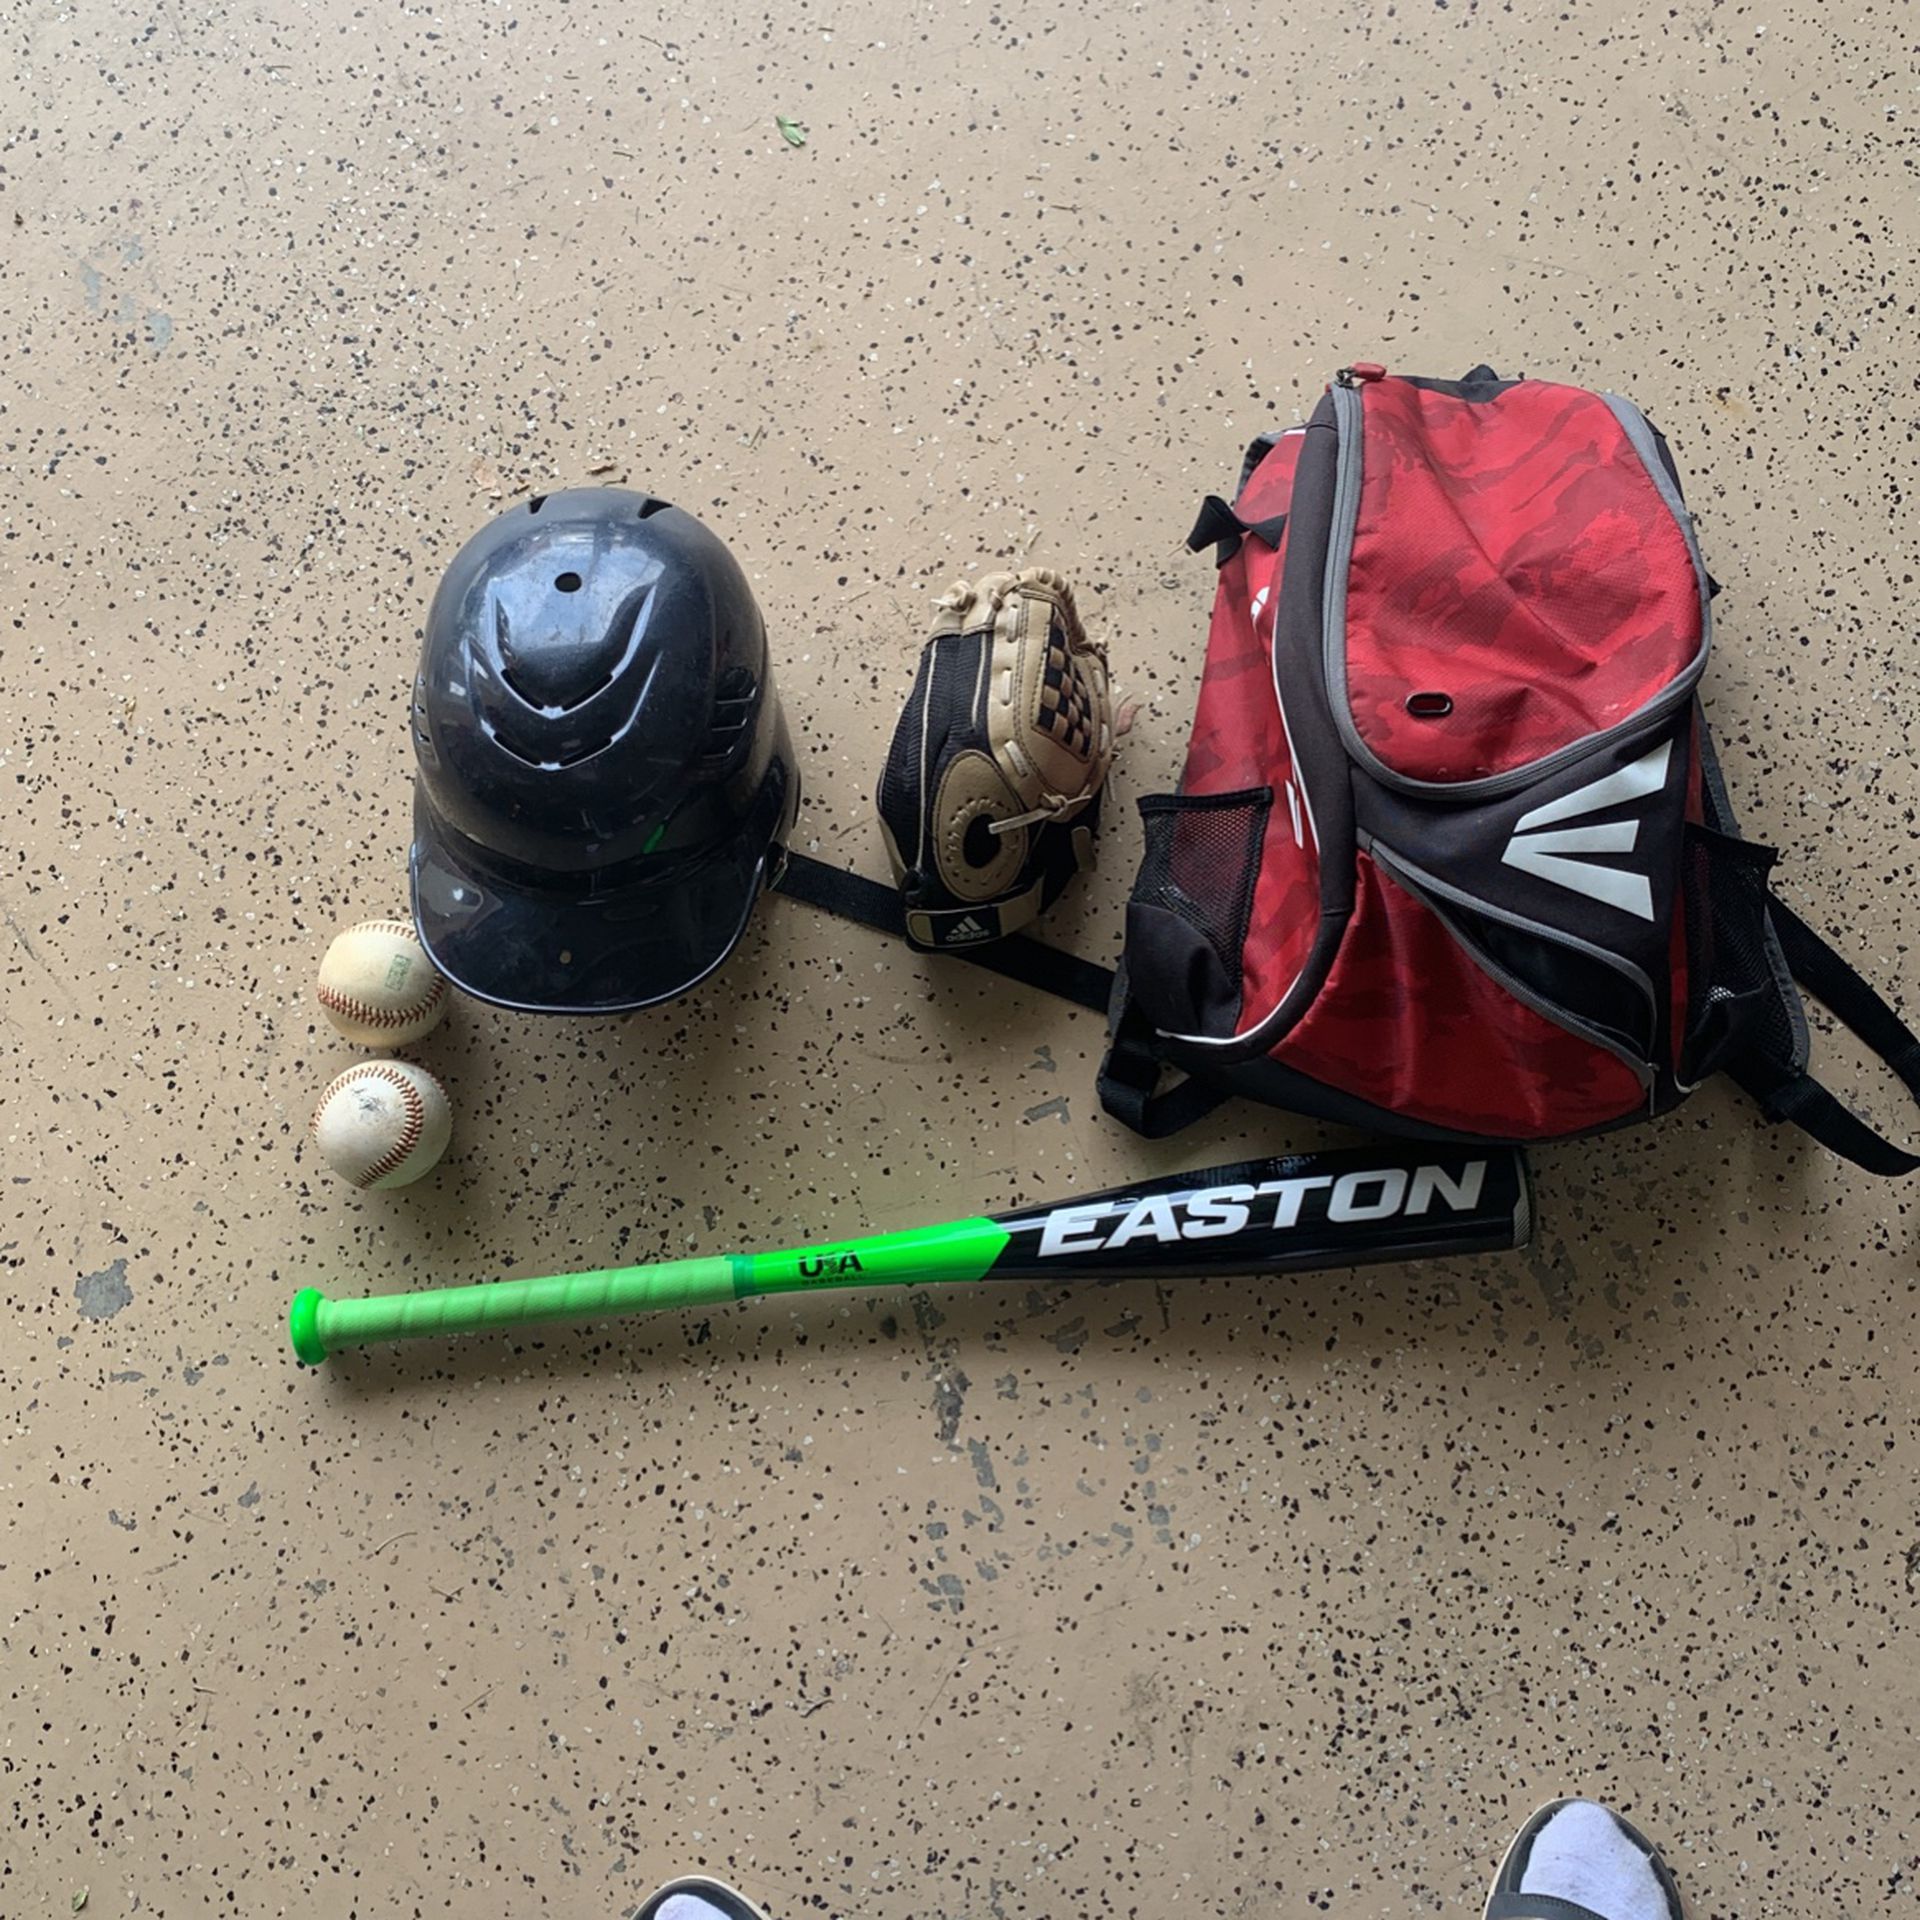 Little League Baseball Bag, Baseball Bat, Baseball Helmet, Baseball Glove Balls 